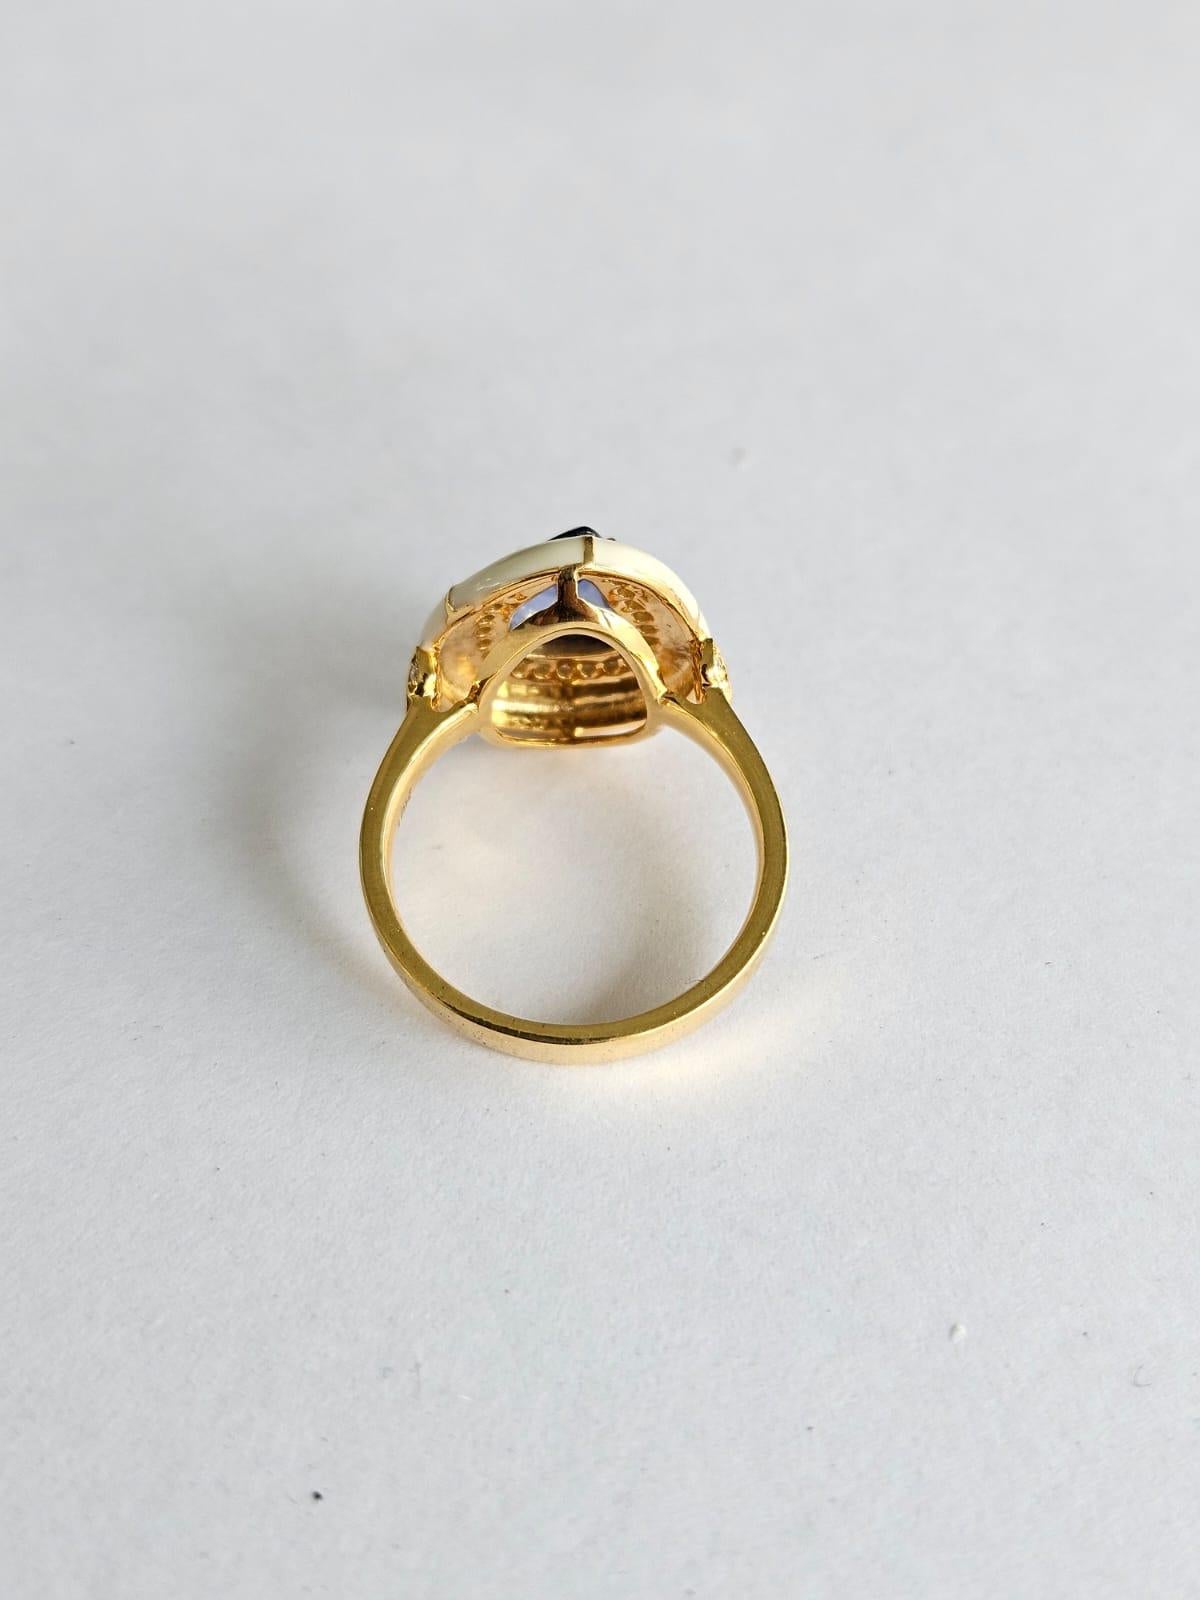 Modern Set in 18K Gold, Ceylon Blue Sapphire, White Enamel & Diamonds Engagement Ring